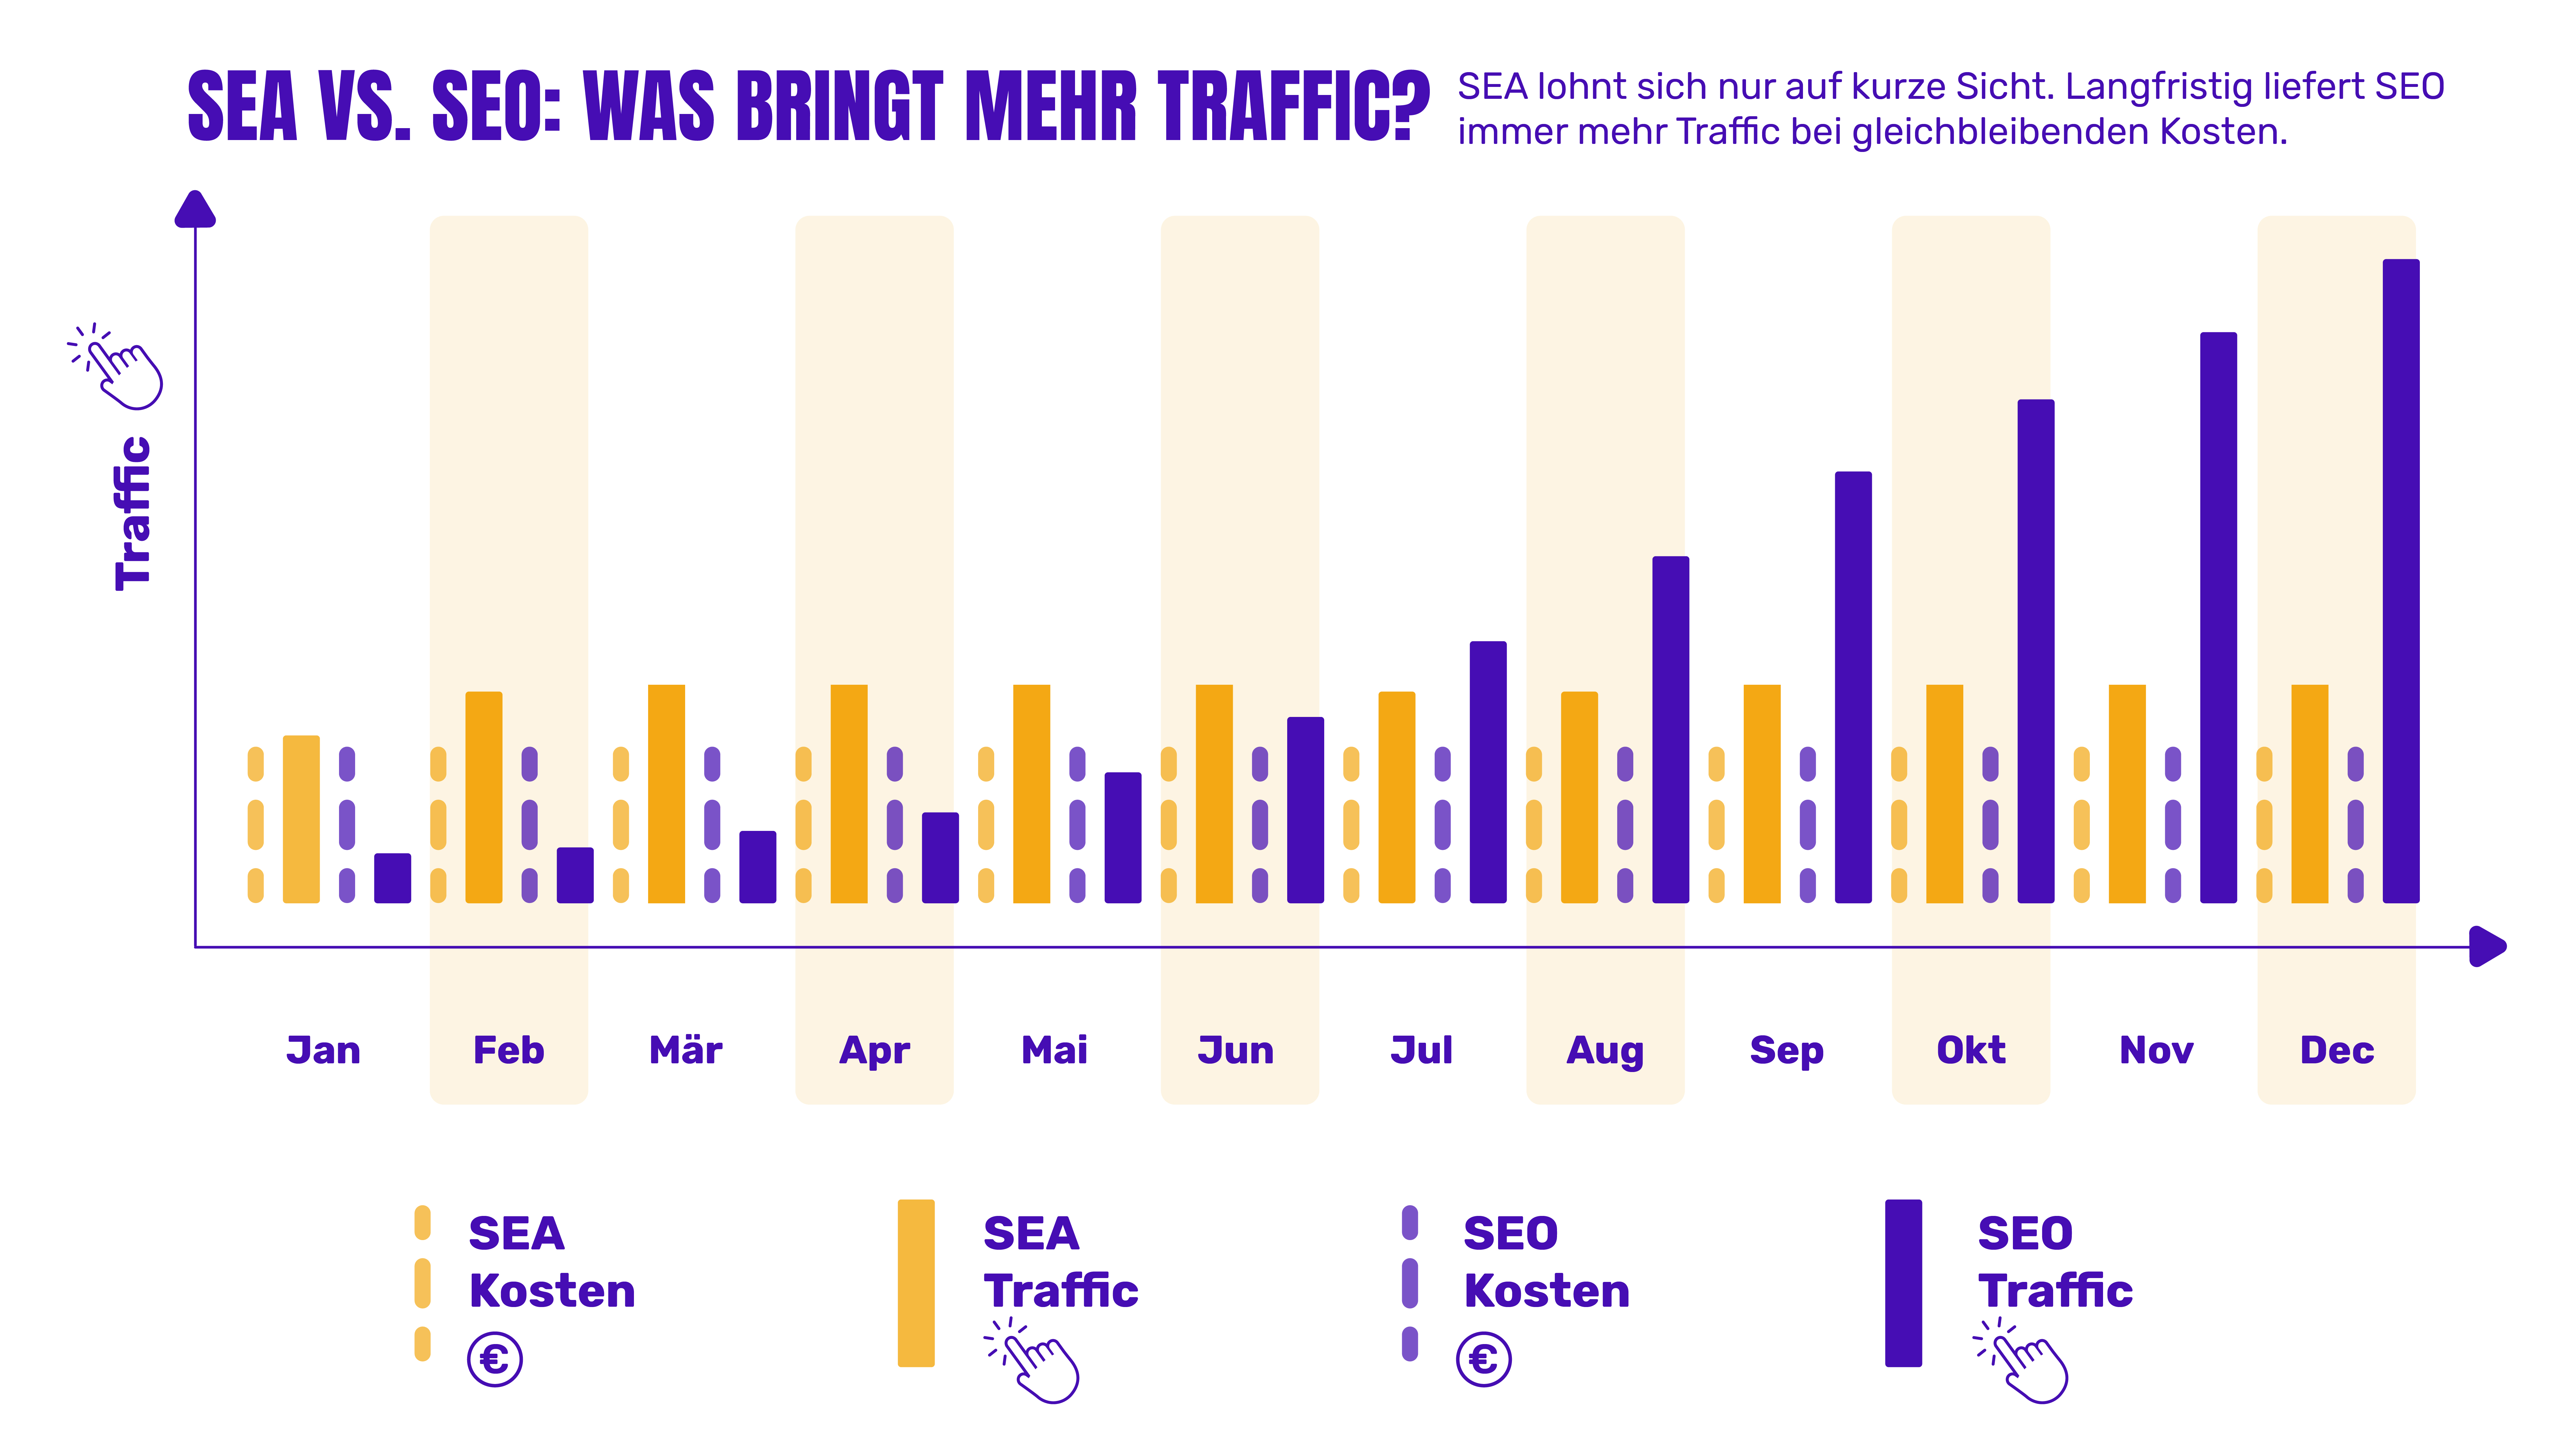 Zu sehen ist ein grafischer Traffic-Vergleich zwischen SEA und SEO über ein Jahr